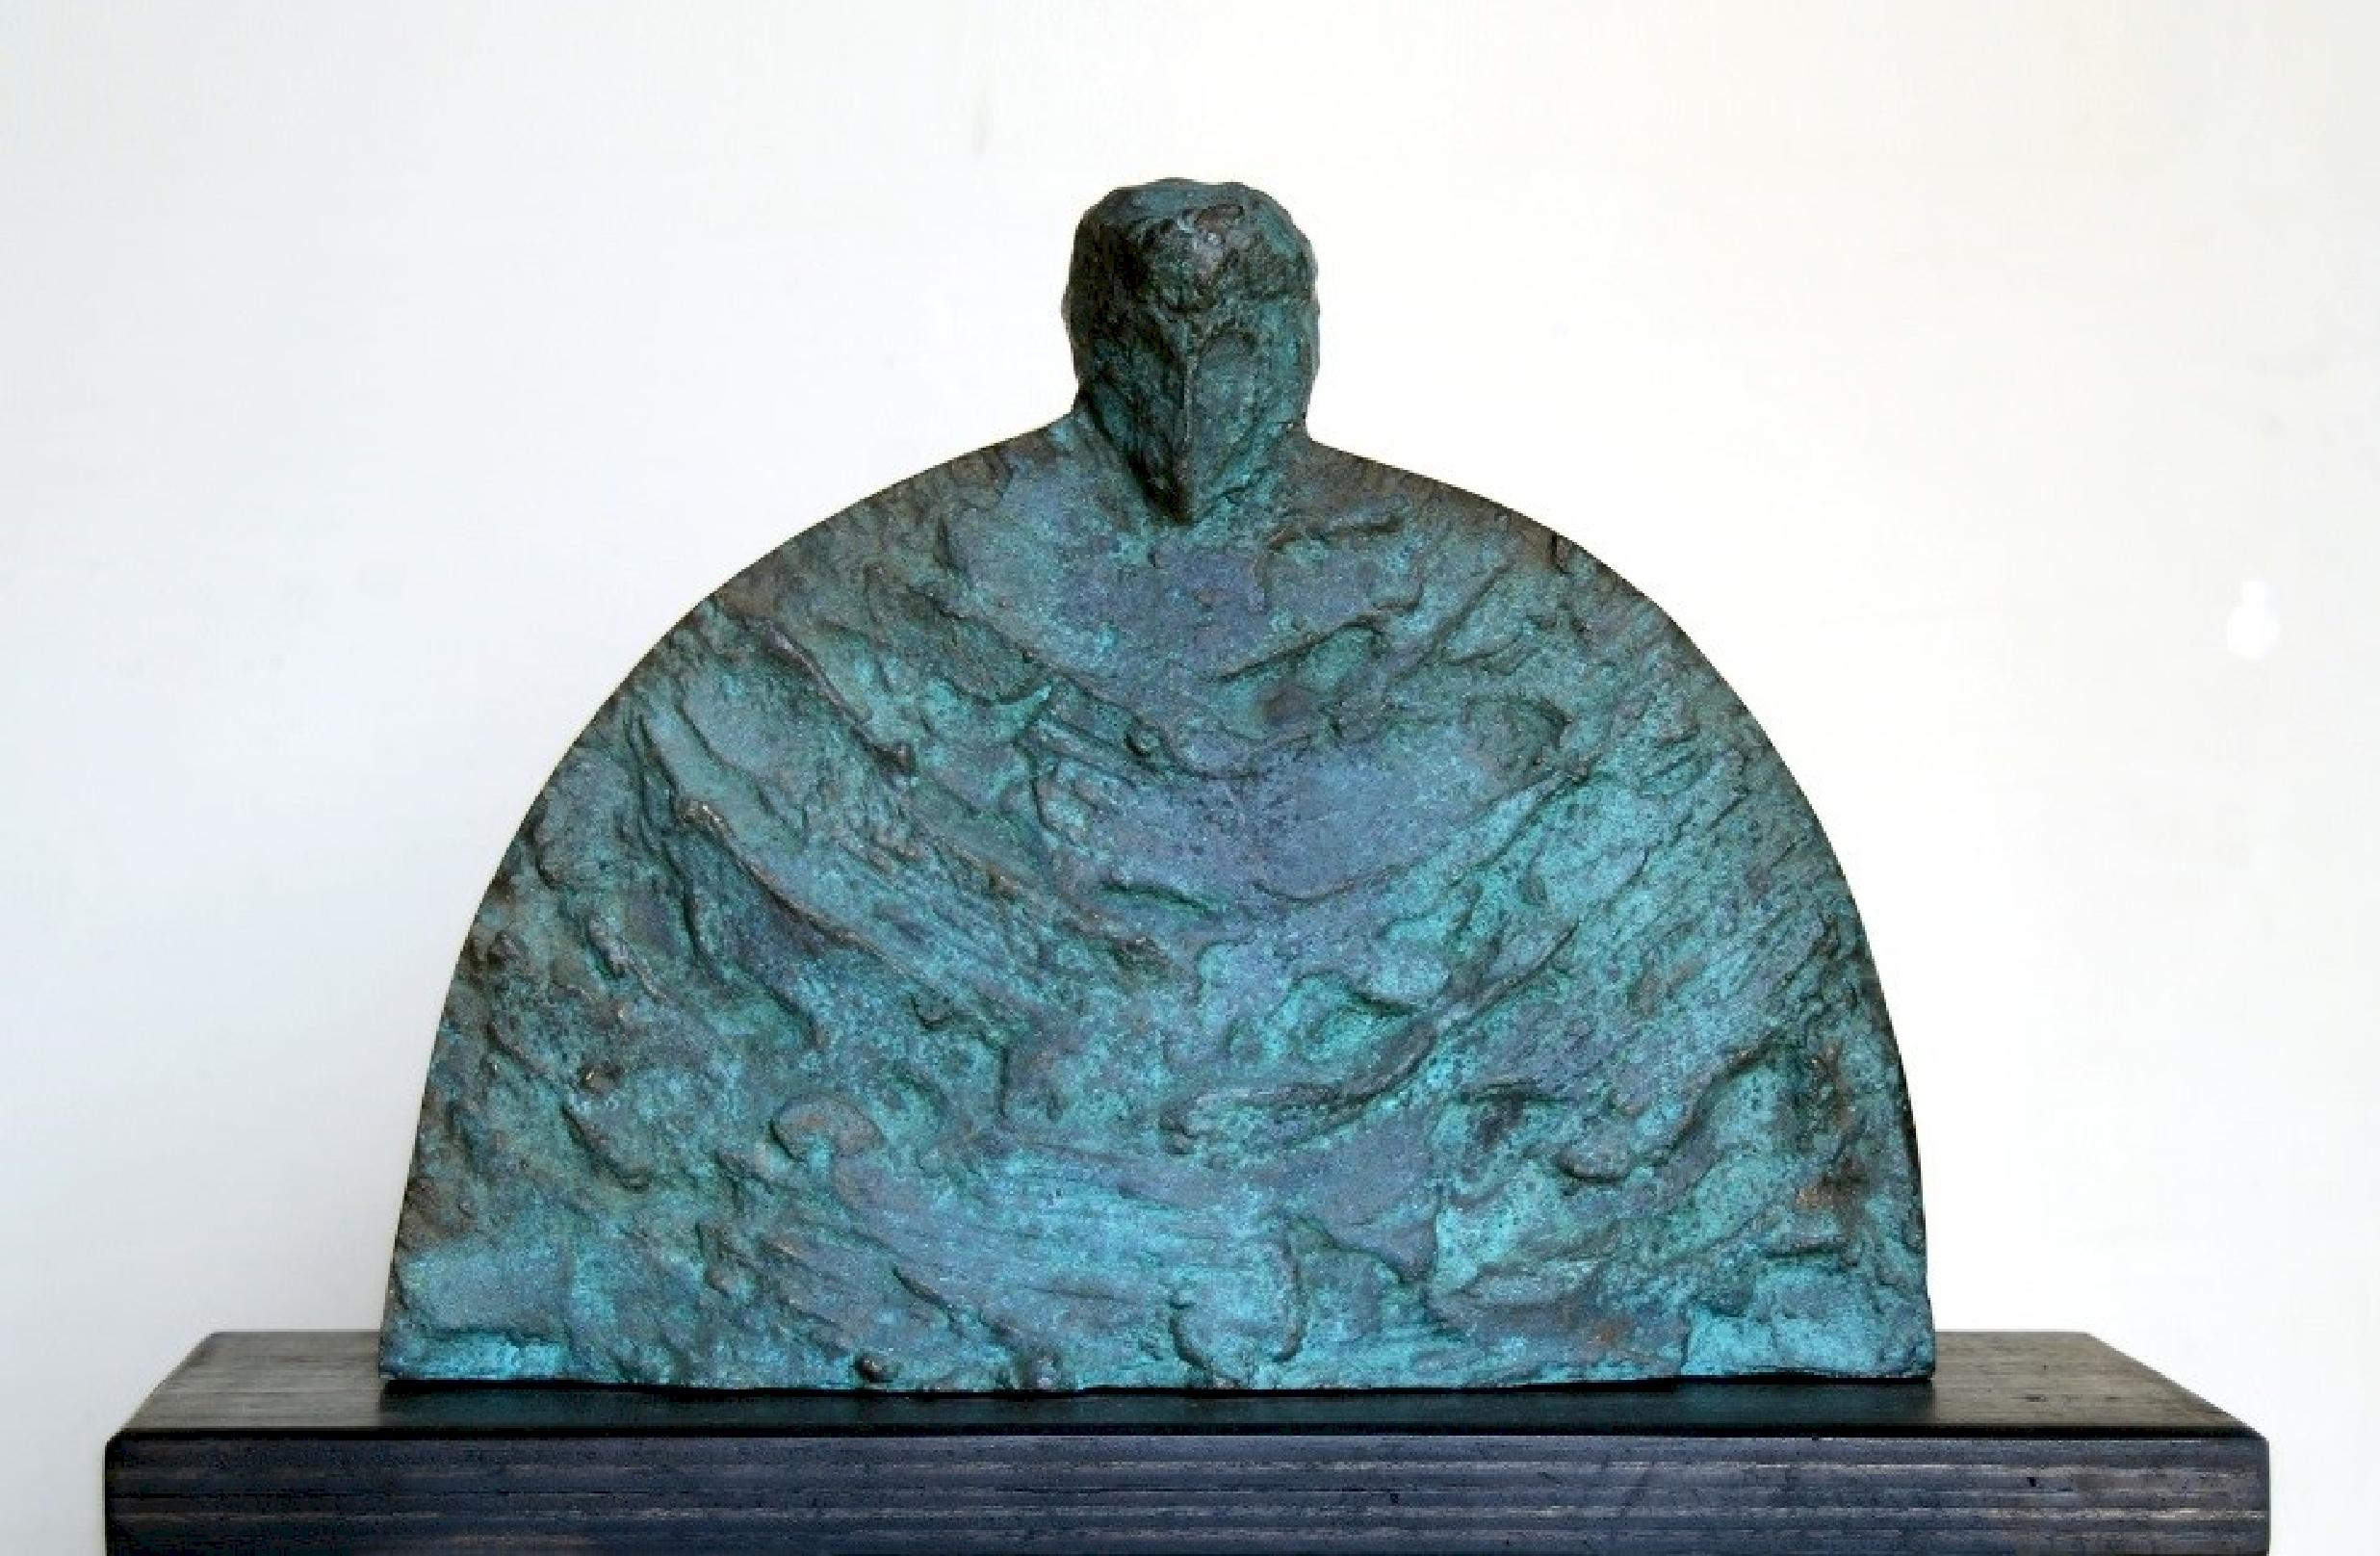 „Clergyman“ Bronzeskulptur „Clergyman“ 11" x 14" x 5" Zoll von Sarkis Tossonian

Sarkis Tossoonian wurde 1953 in Alexandria geboren. Er schloss sein Studium an der Fakultät für Bildende Künste/Bildhauerei 1979 ab. Seit 1980 und bis heute stellt er